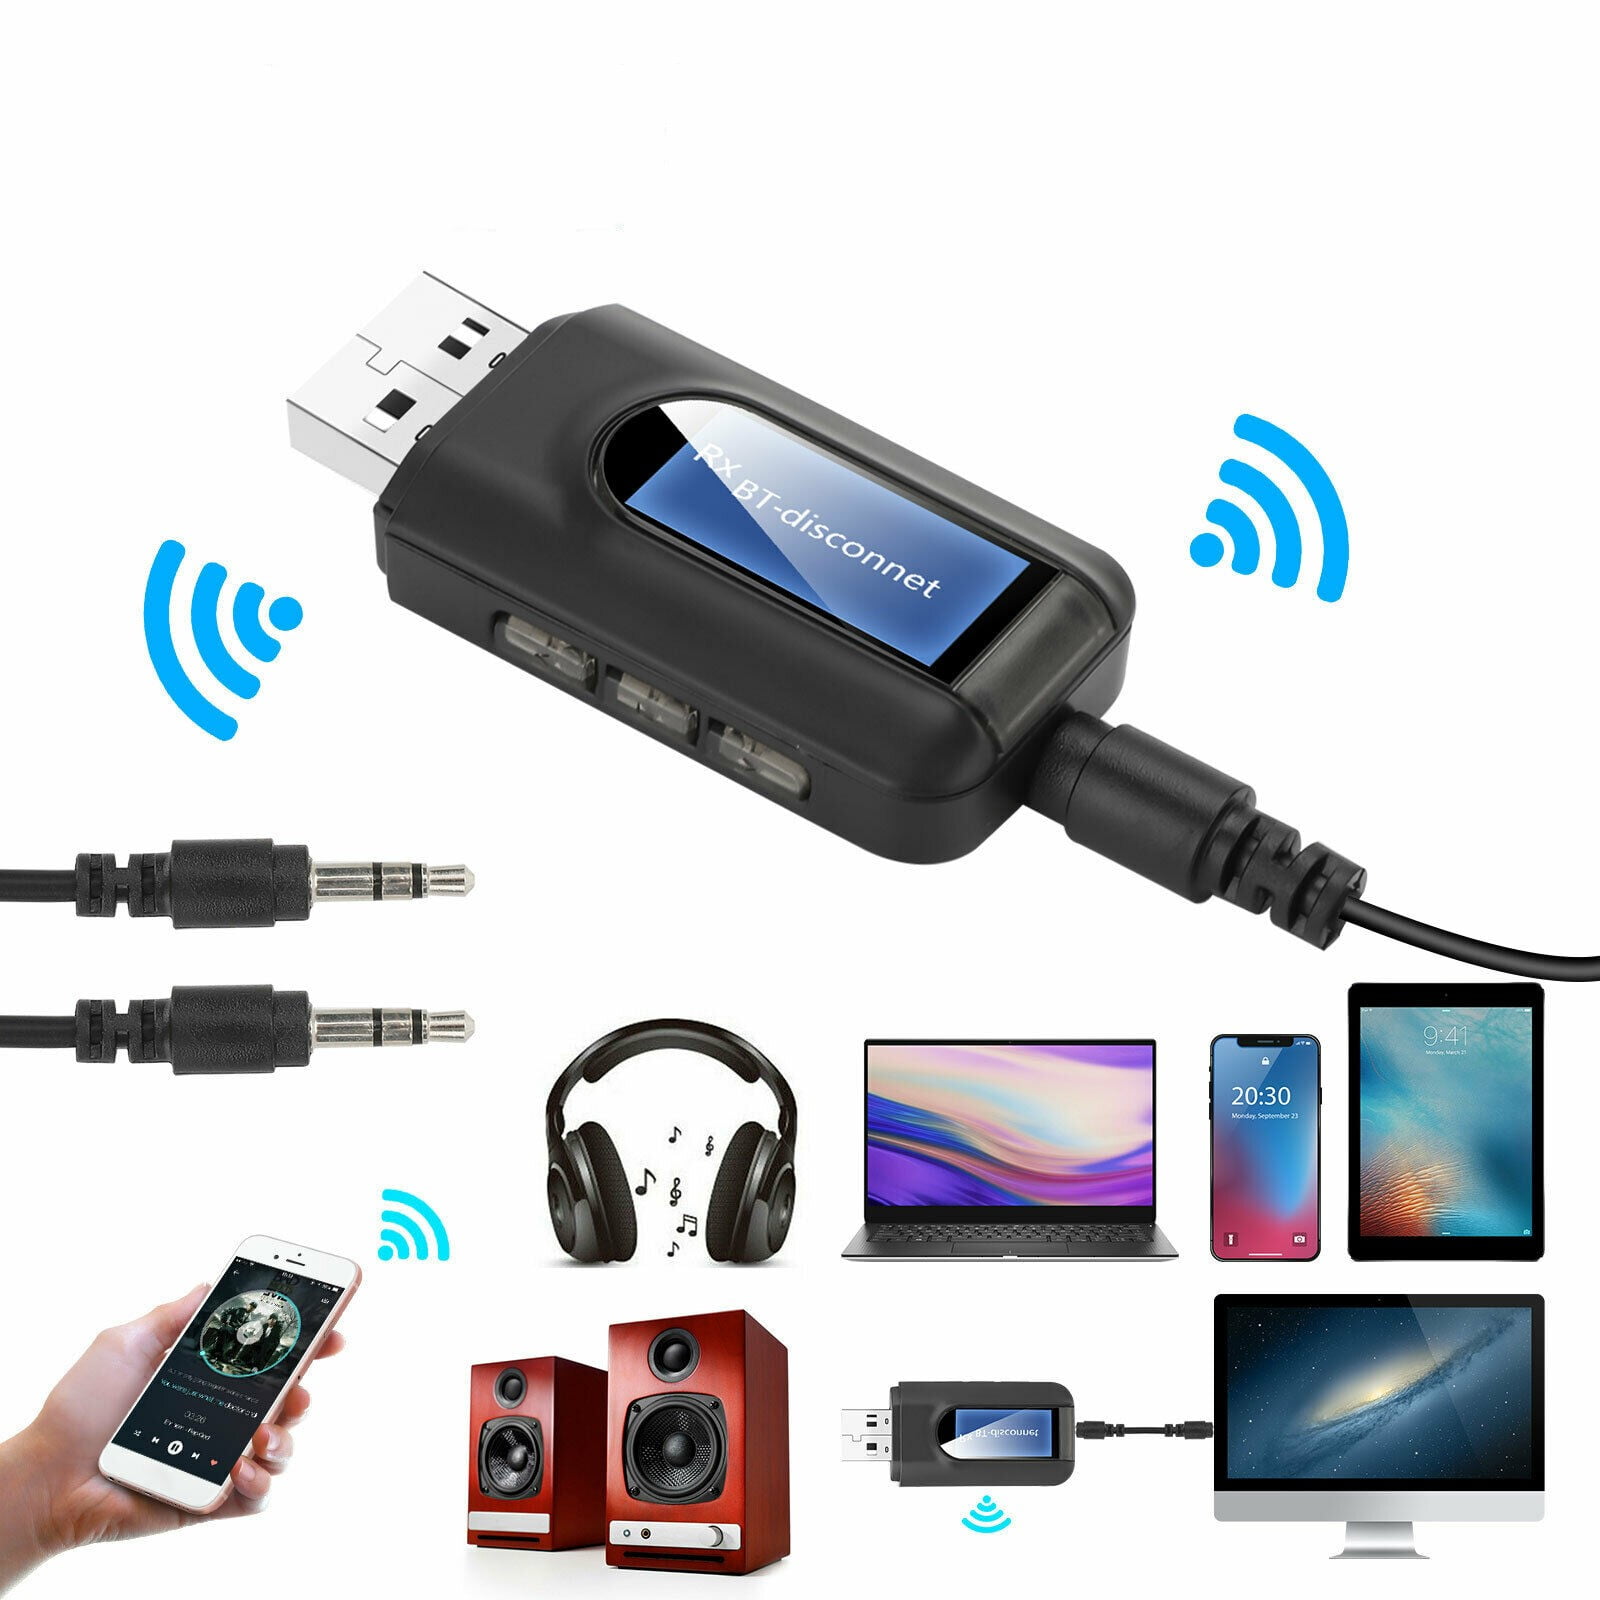 EasyULT Bluetooth Transmitter Empfänger 2 in 1 Wireless Sender/Receiver Adapter USB Bluetooth 5.0 Audio mit Display mit 3.5 mm Aux für TV PC Kopfhörer Lautsprecher 